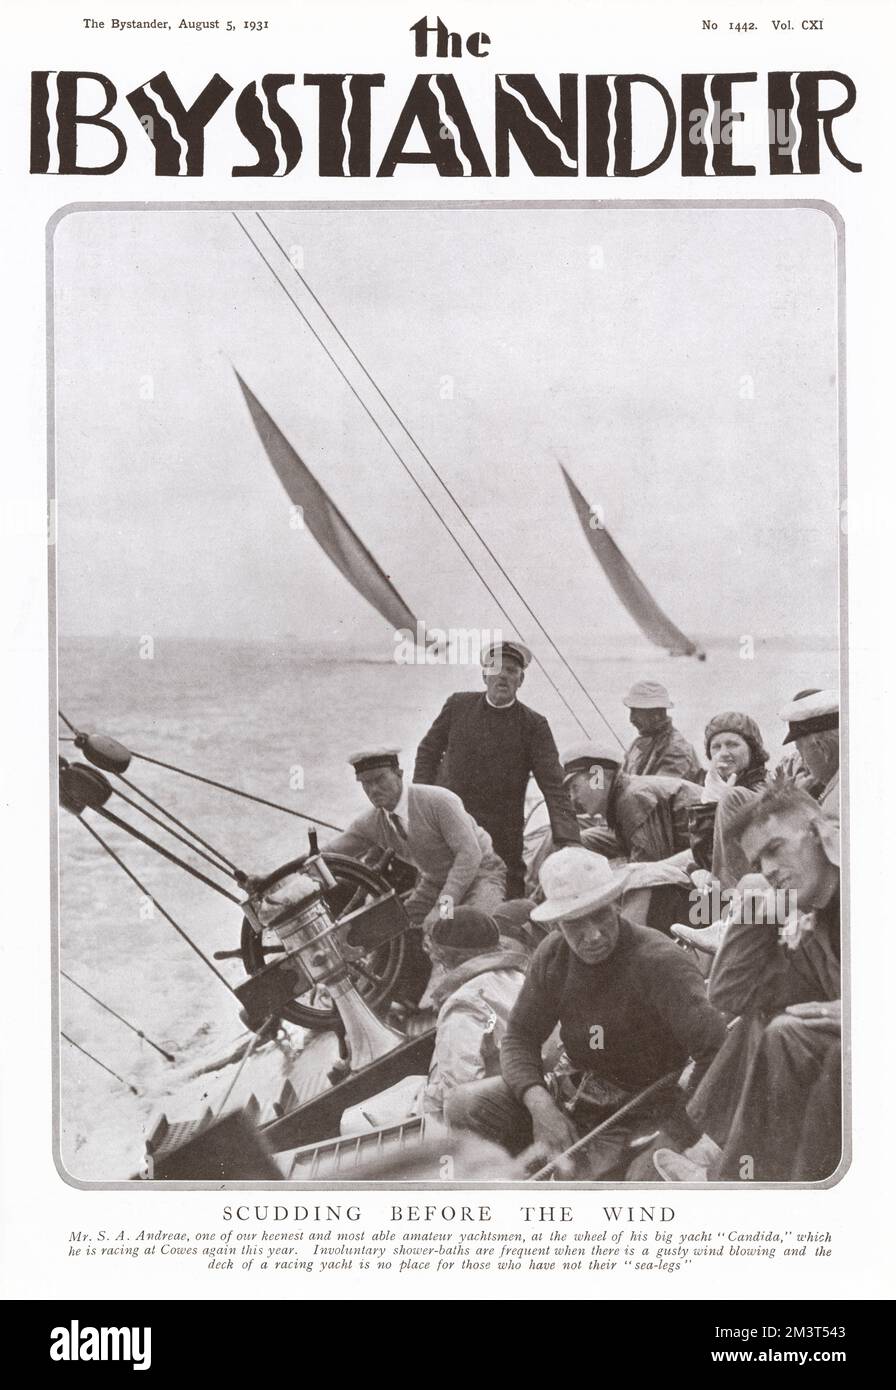 Herman Andreae, New Yorker Banker und Eigentümer und Steuermann der Rennyacht Candida, hier mit Besatzung an Bord gesehen, während die Yacht vor dem Wind gleitet. Stockfoto